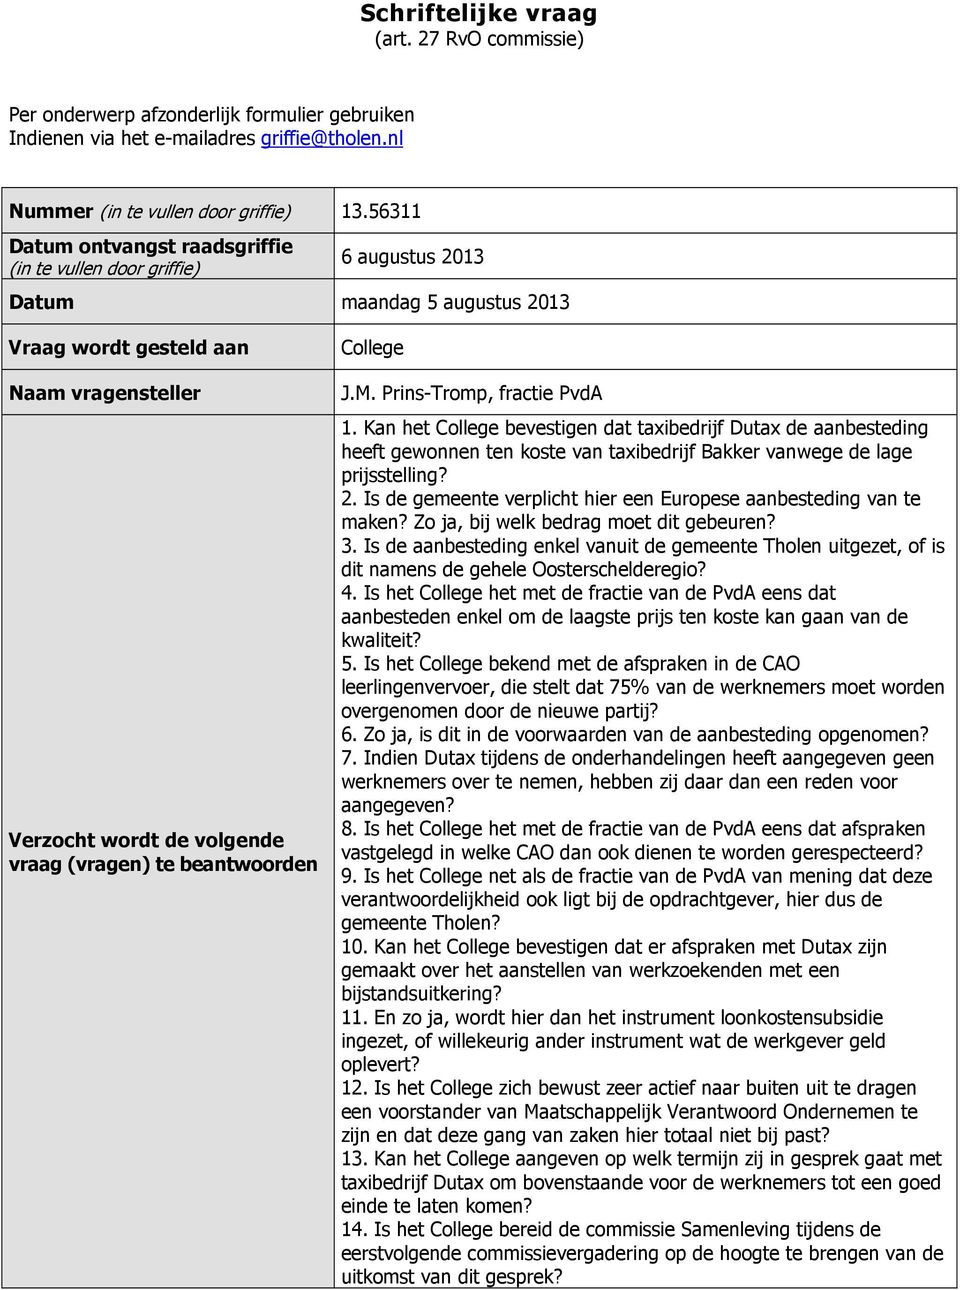 beantwoorden College J.M. Prins-Tromp, fractie PvdA 1. Kan het College bevestigen dat taxibedrijf Dutax de aanbesteding heeft gewonnen ten koste van taxibedrijf Bakker vanwege de lage prijsstelling?